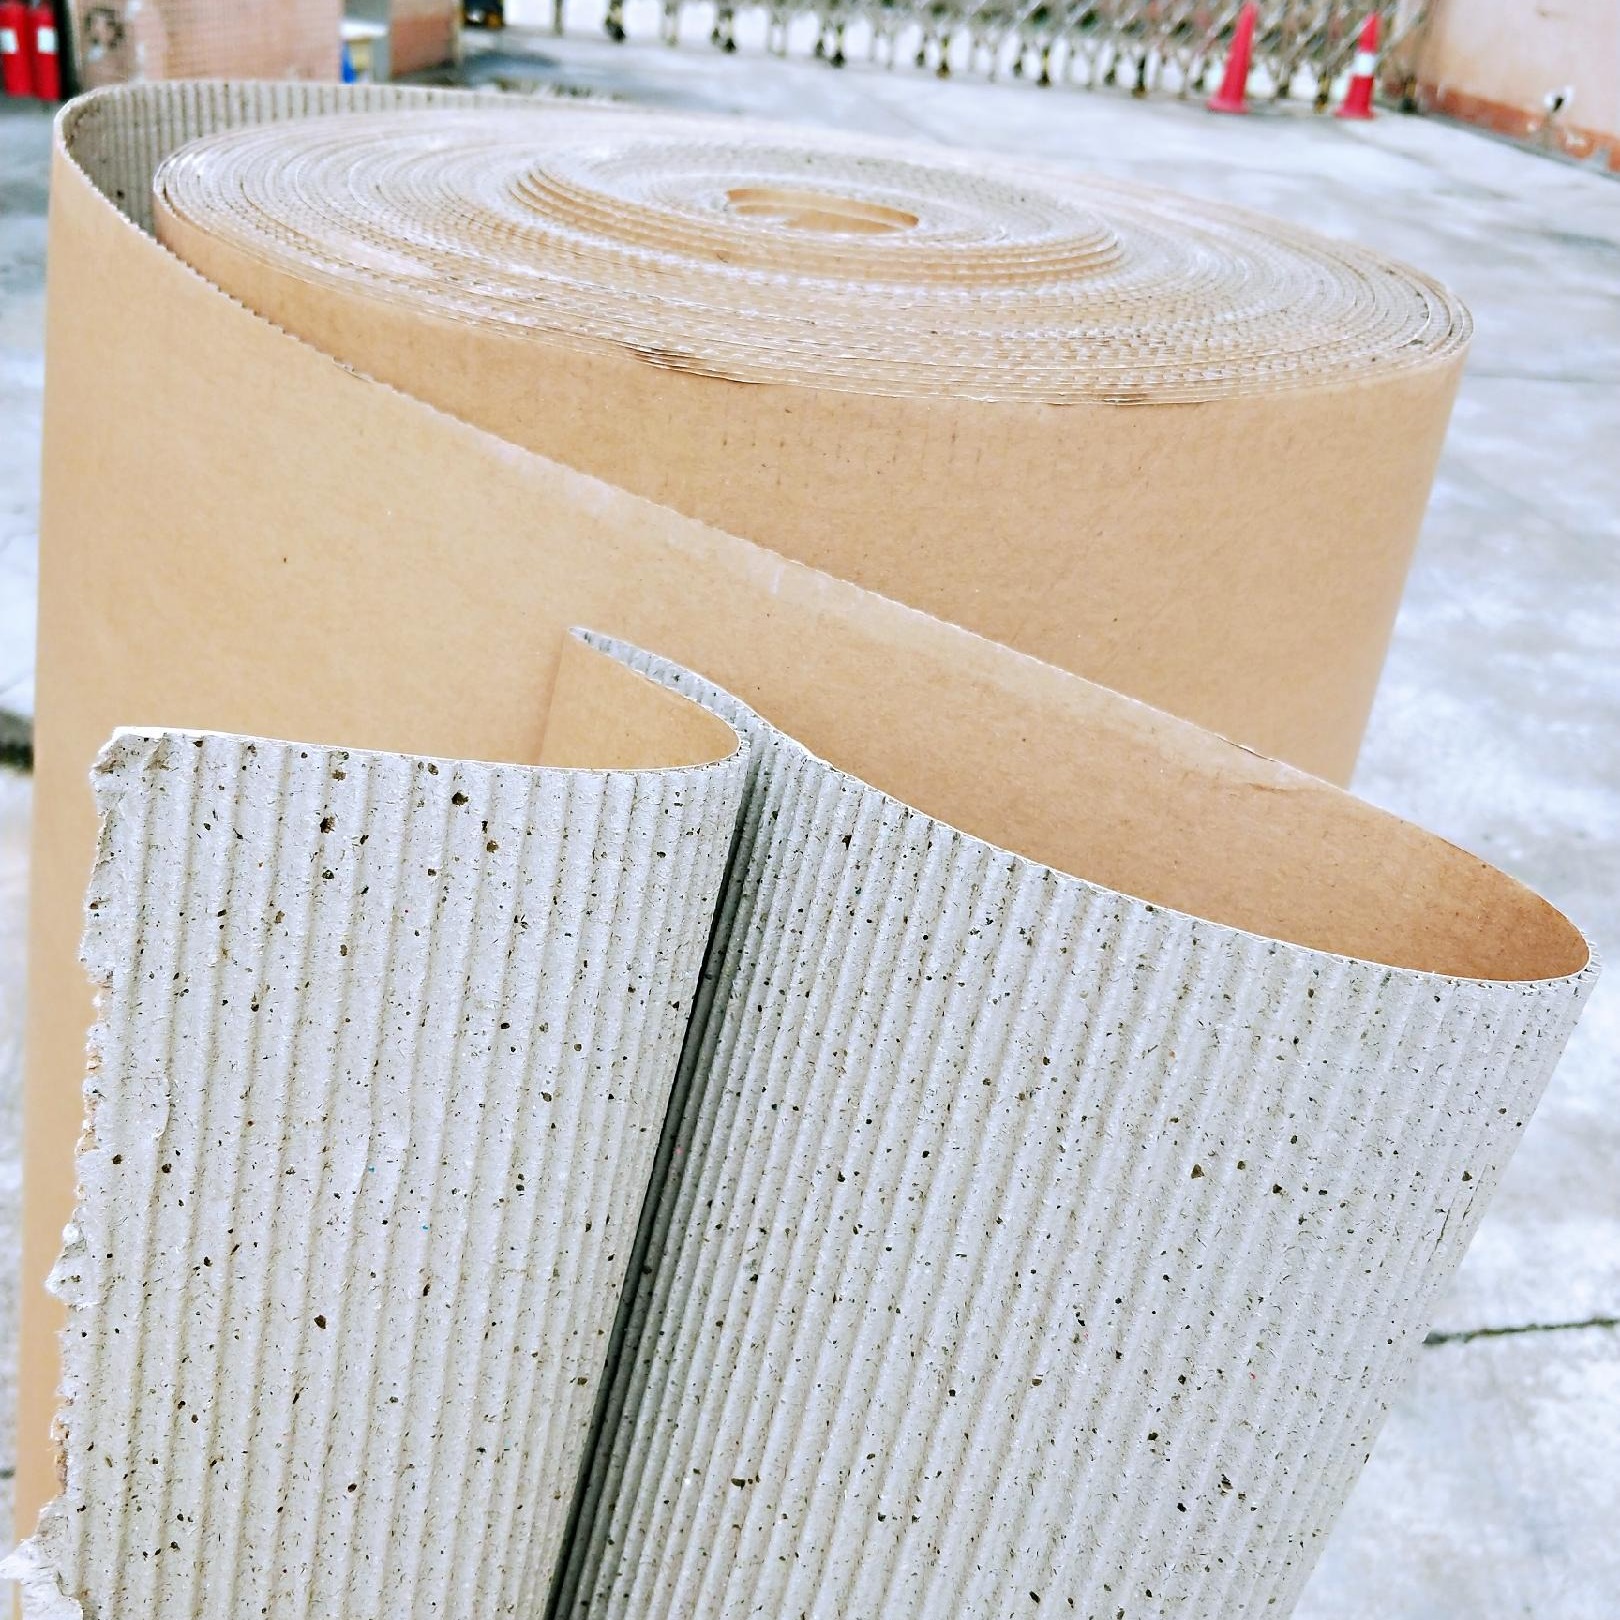 双层瓦楞纸 见坑纸1.2*50米 家具包装纸 印字纸皮 地板保护纸 家具包装纸图片